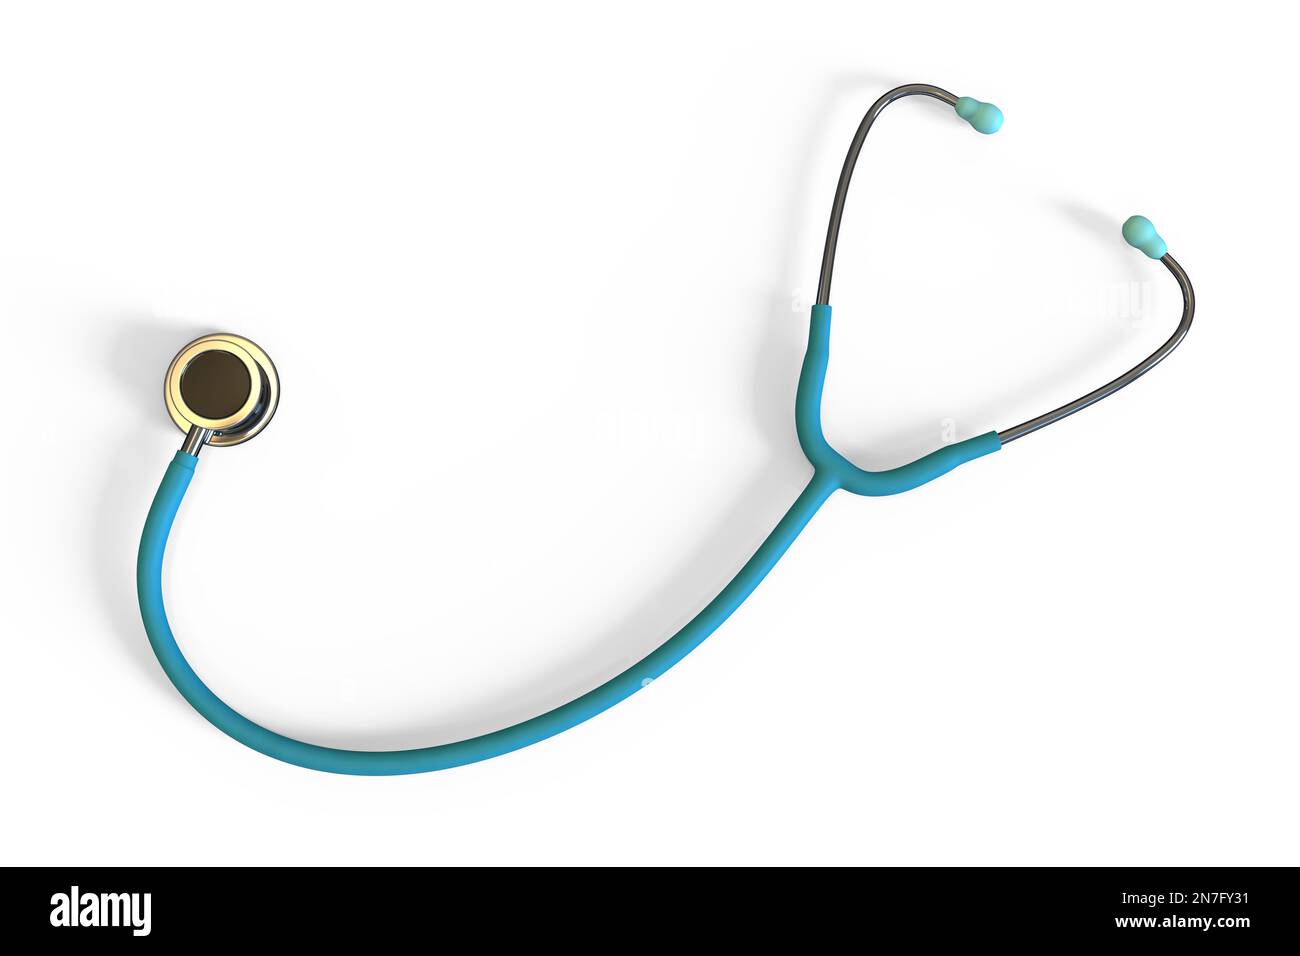 Stethoscope, illustration Stock Photo